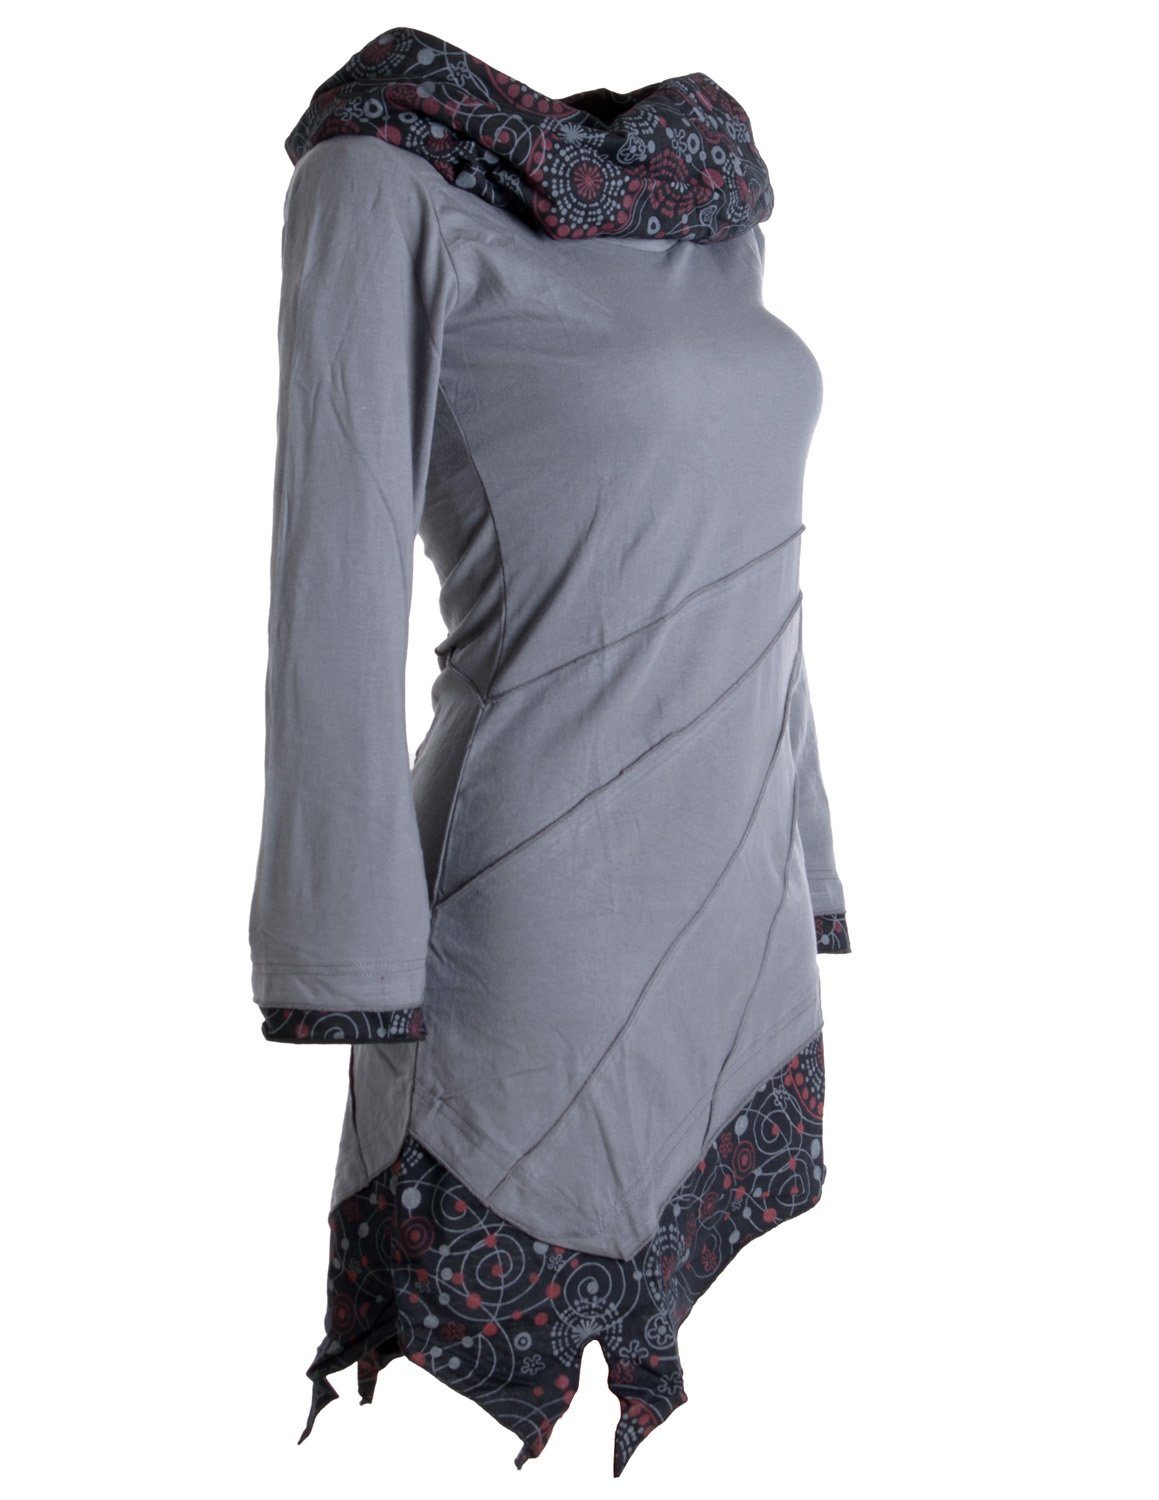 Baumwolle Goa, Boho grau Hippie, Kleid mit Vishes Style Schalkragen aus Ethno, Asymmetrisches Jerseykleid